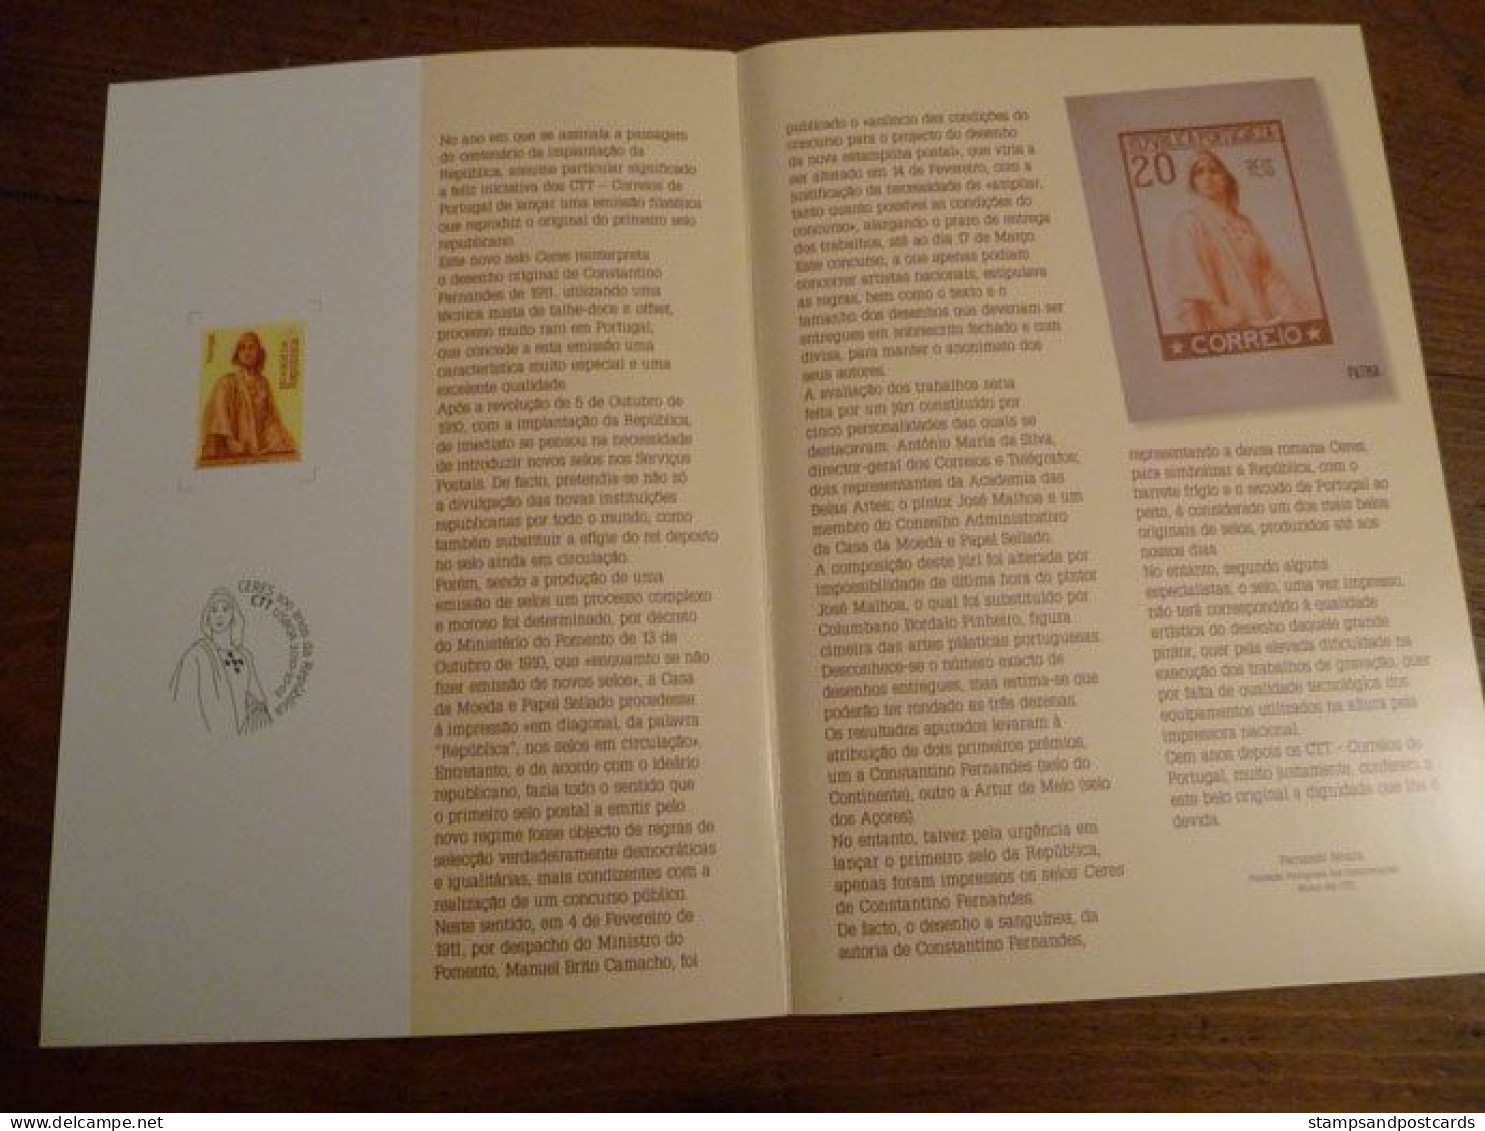 Portugal 2010 Centenaire Republique Ceres Gravé Taille Douce Brochure + Timbre + FDC Republic Centennial Engraved Stamp - Covers & Documents